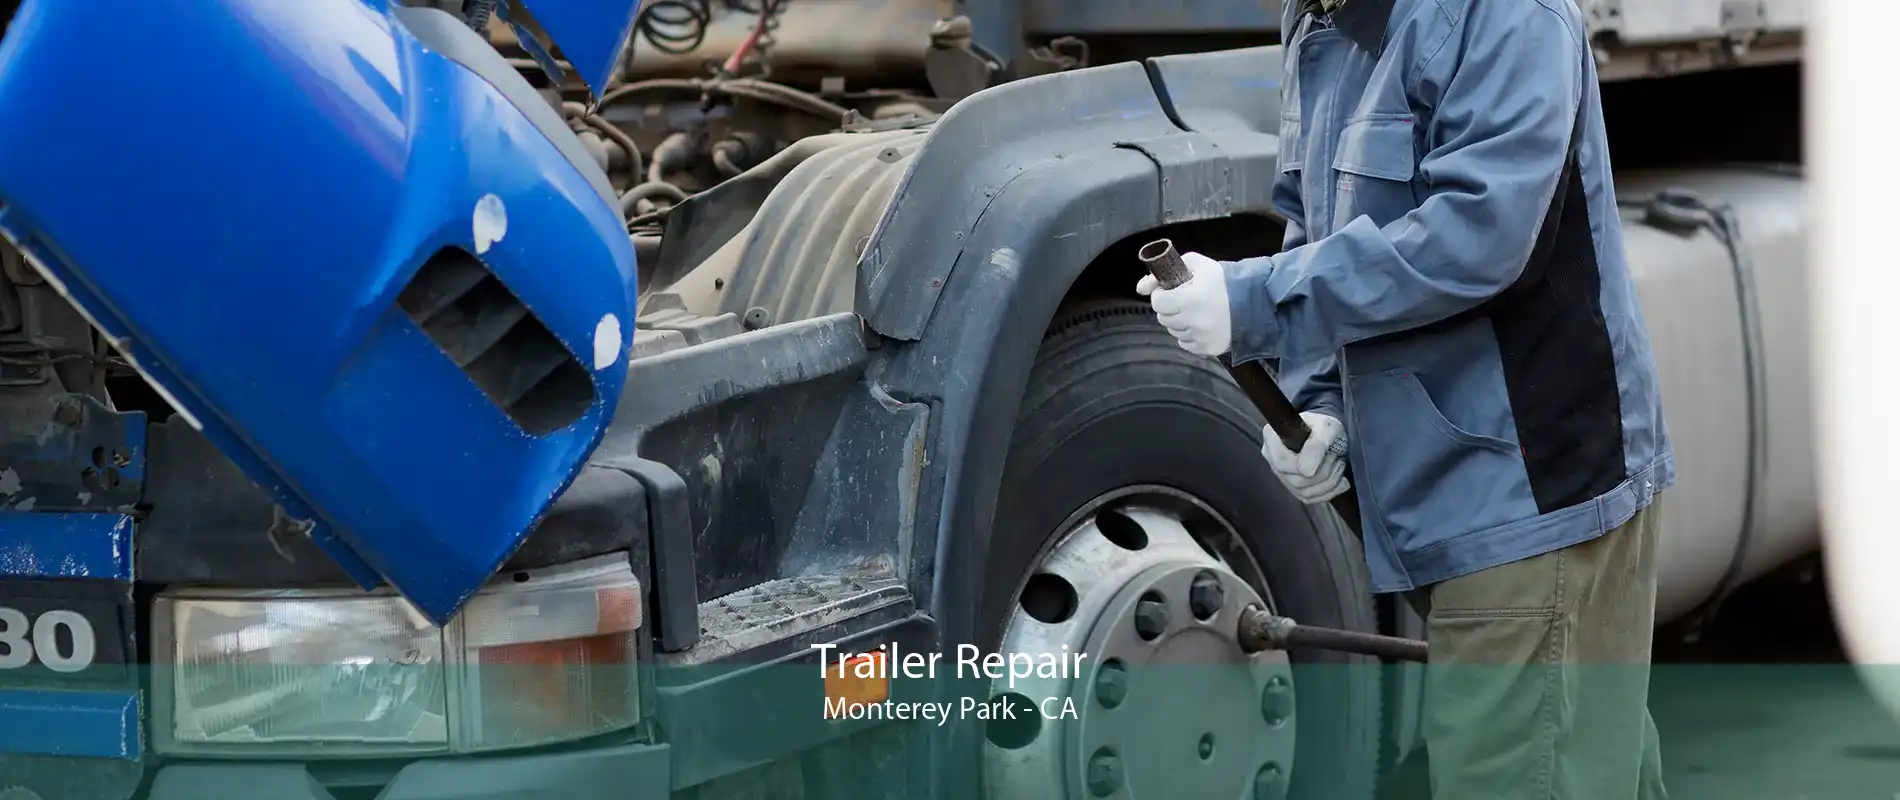 Trailer Repair Monterey Park - CA